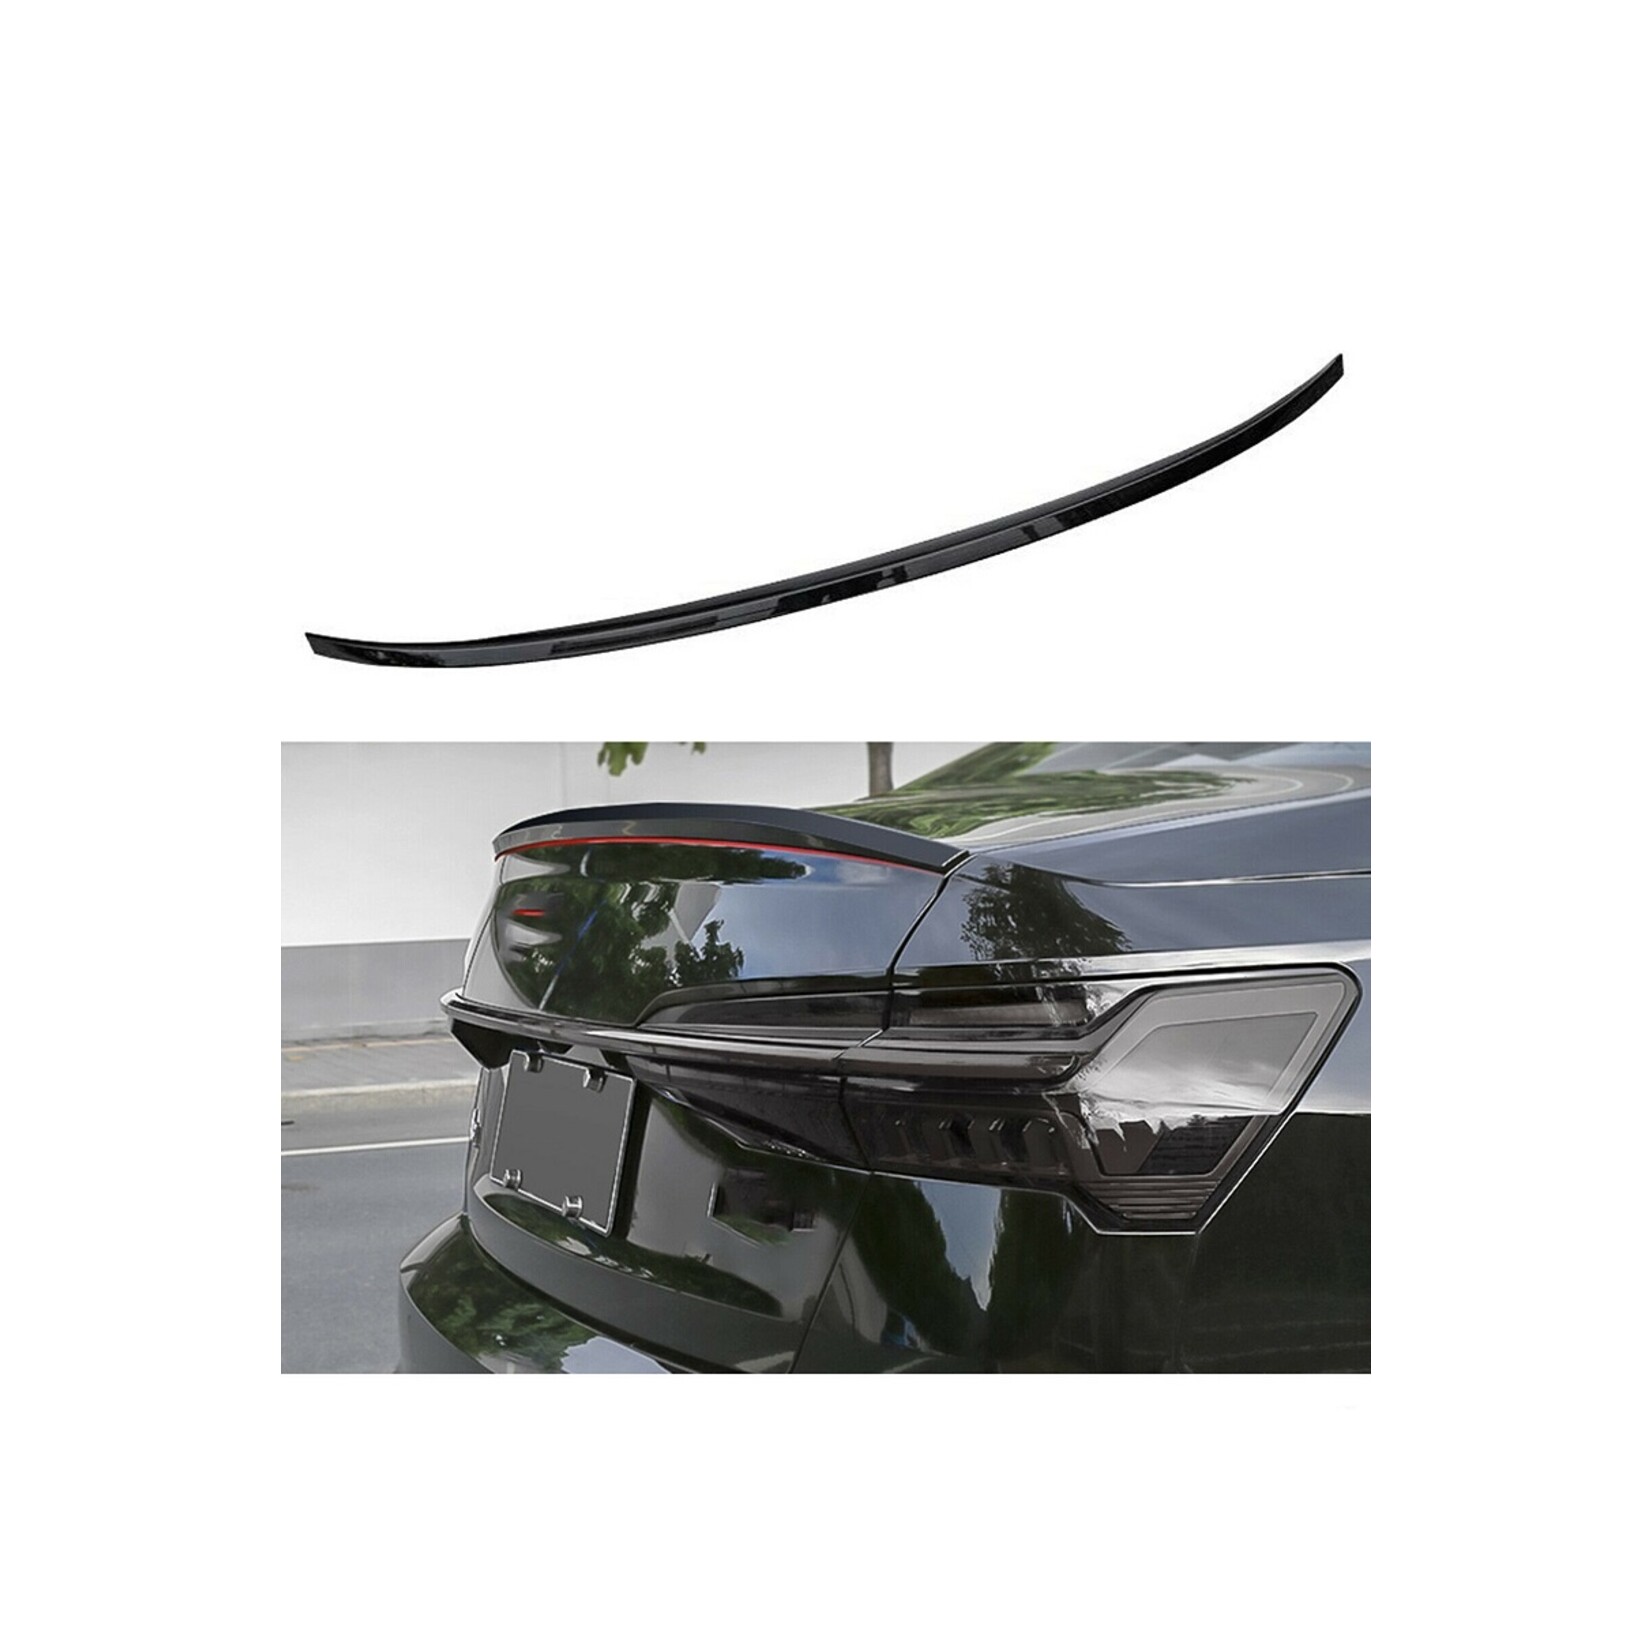 Kofferbakspoiler spoilerlip hoogglans zwart voor Audi A6 C8